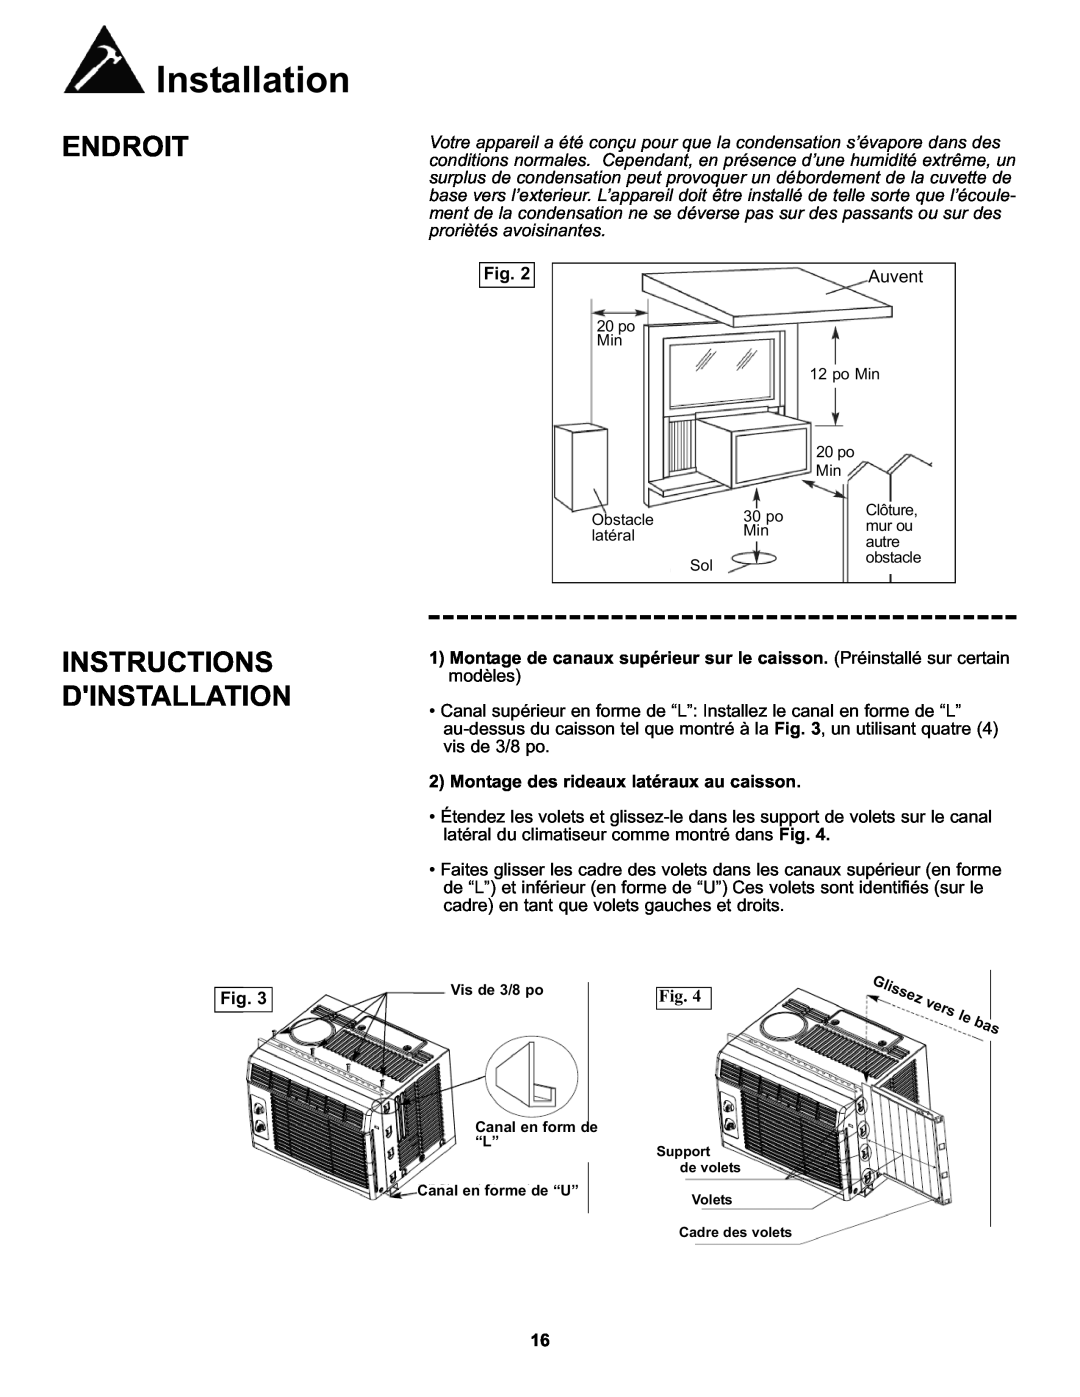 Danby DAC050MB1GB manual Instructions Dinstallation, Montage des rideaux latéraux au caisson, Installation, Endroit 